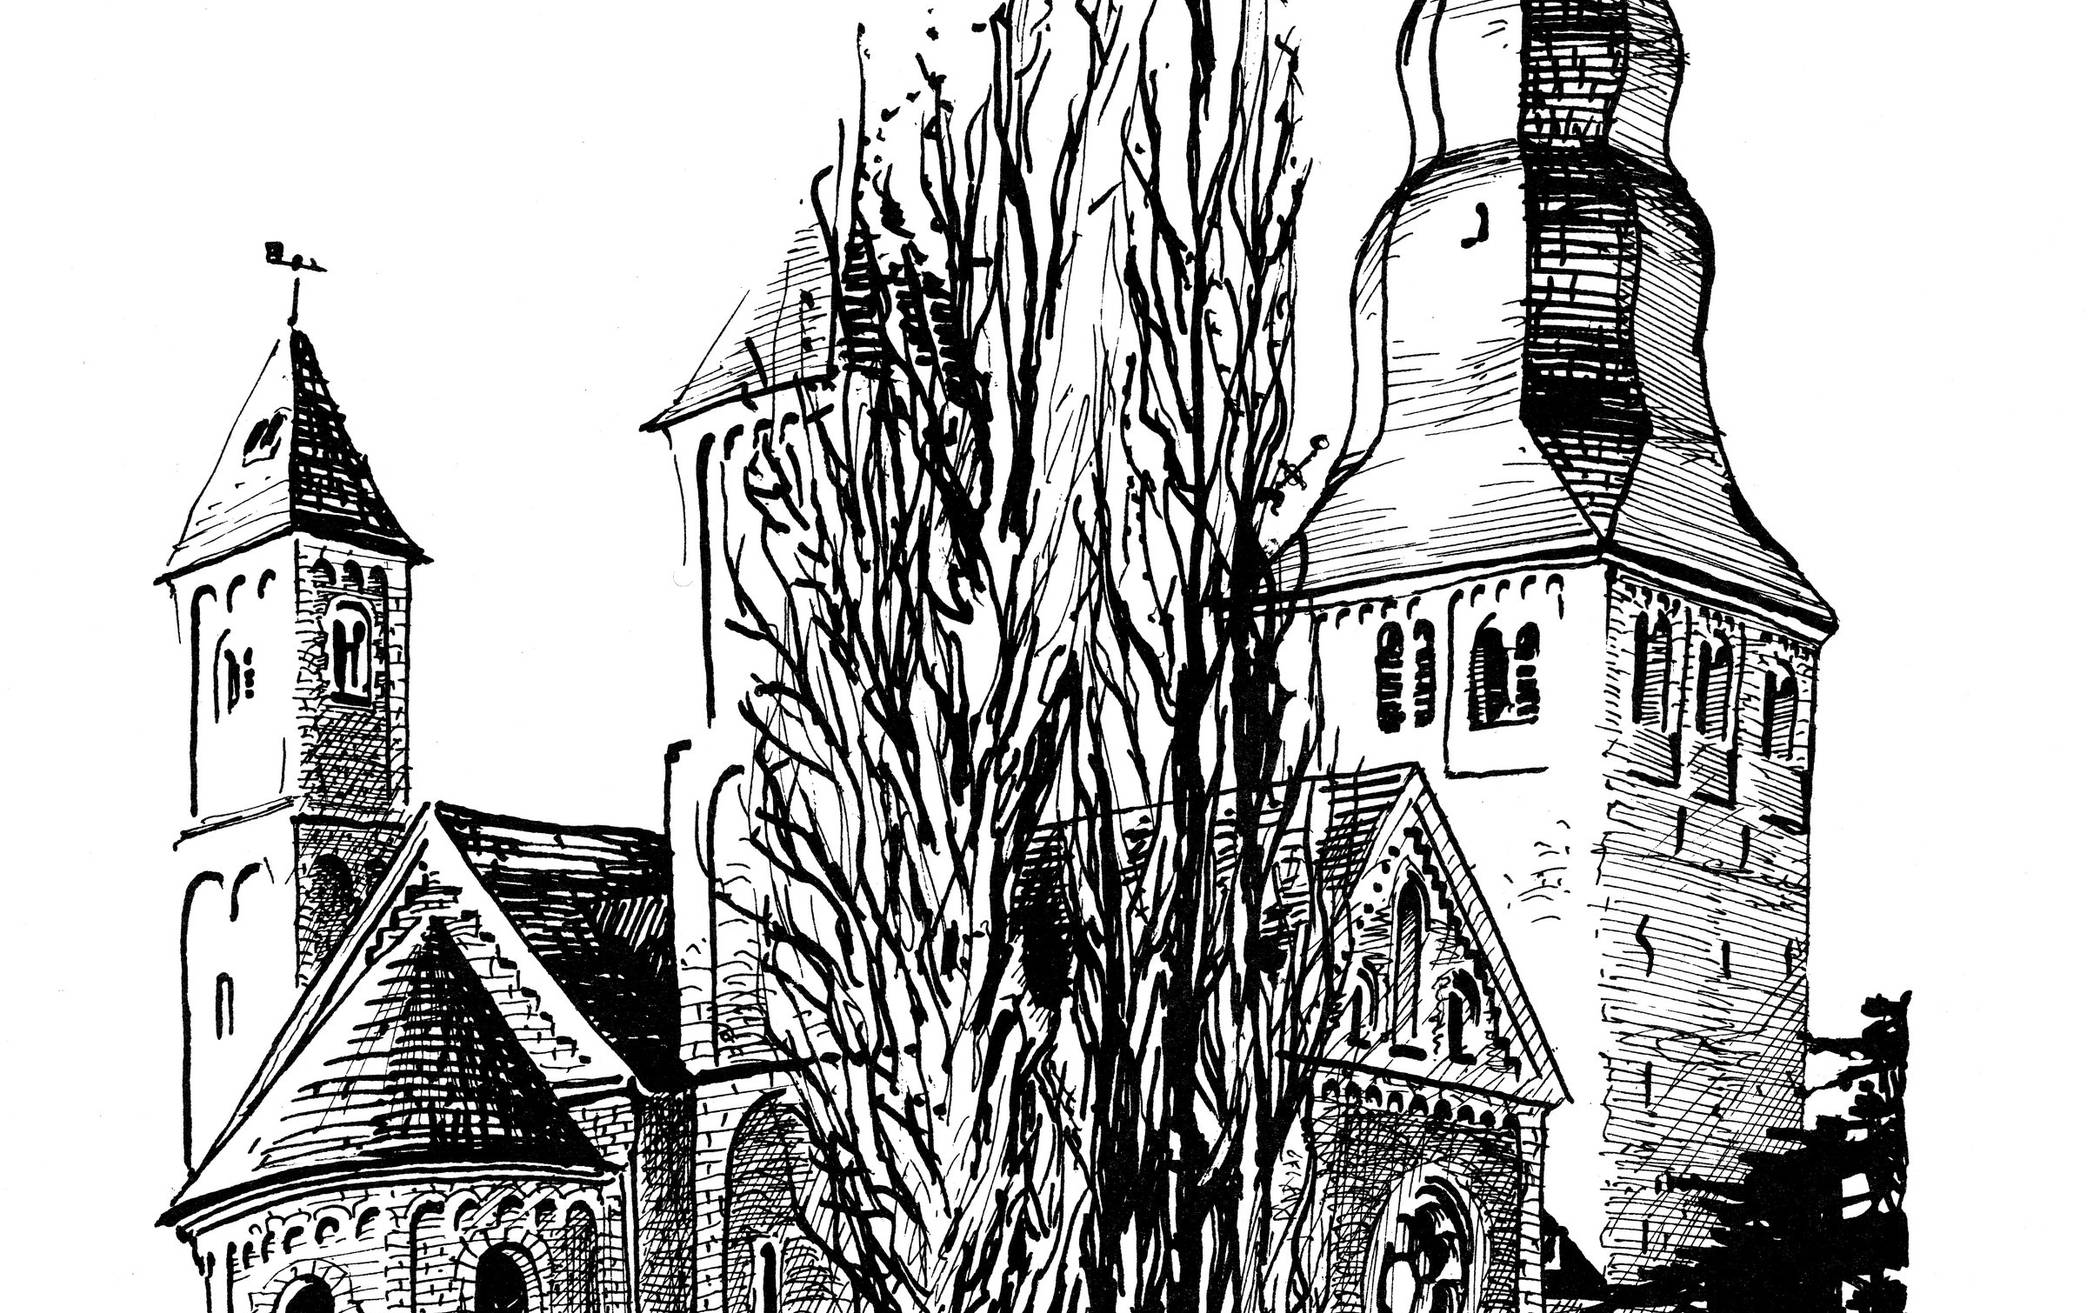  Zeichnung der Katholischen Kirche St. Johannes der Täufer von Gereon Inger aus dem Jahre 1984.  